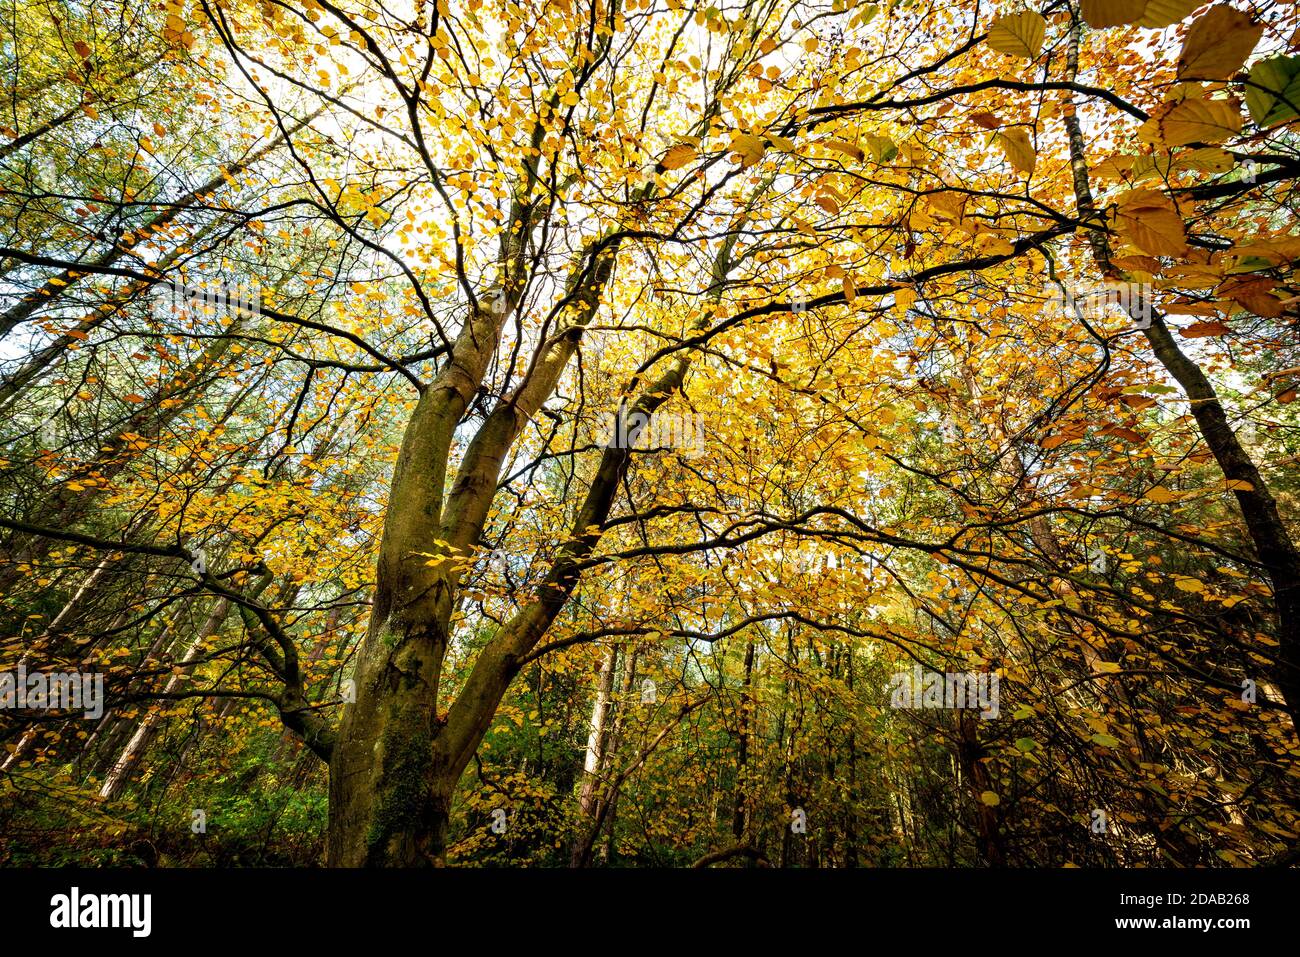 Un arbre d'automne avec des feuilles jaunes. Blidworth Woods Notinghamshire Angleterre Royaume-Uni Banque D'Images